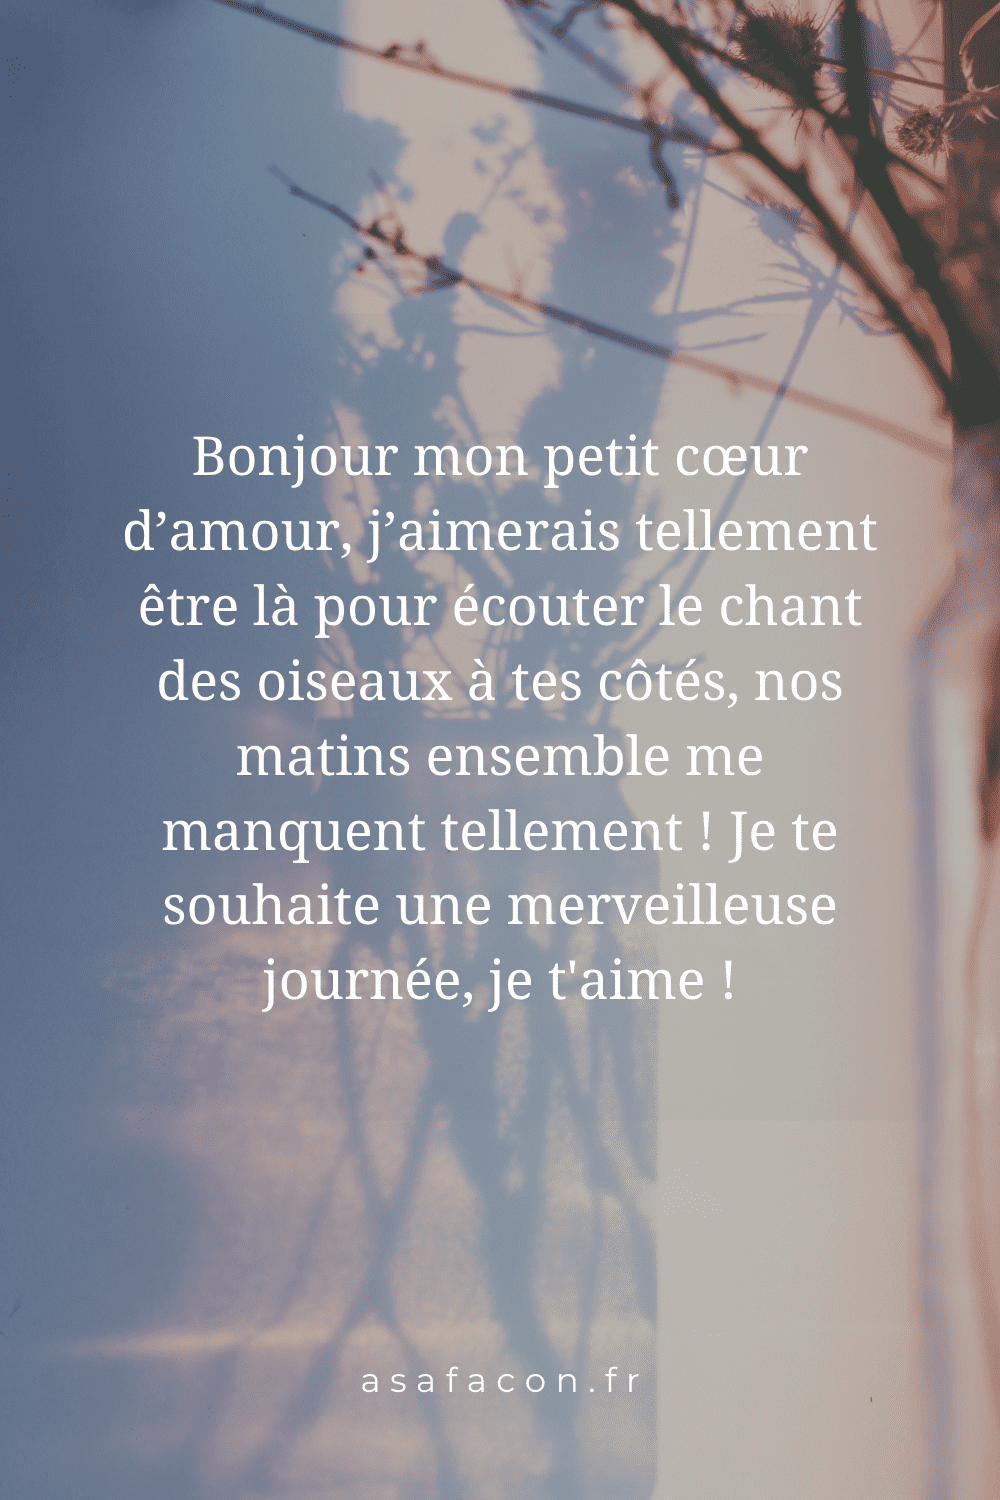 Poeme Pour Dire Bonjour A Sa Femme 100 Idées Pour Dire « Bonjour Mon Amour » À Distance